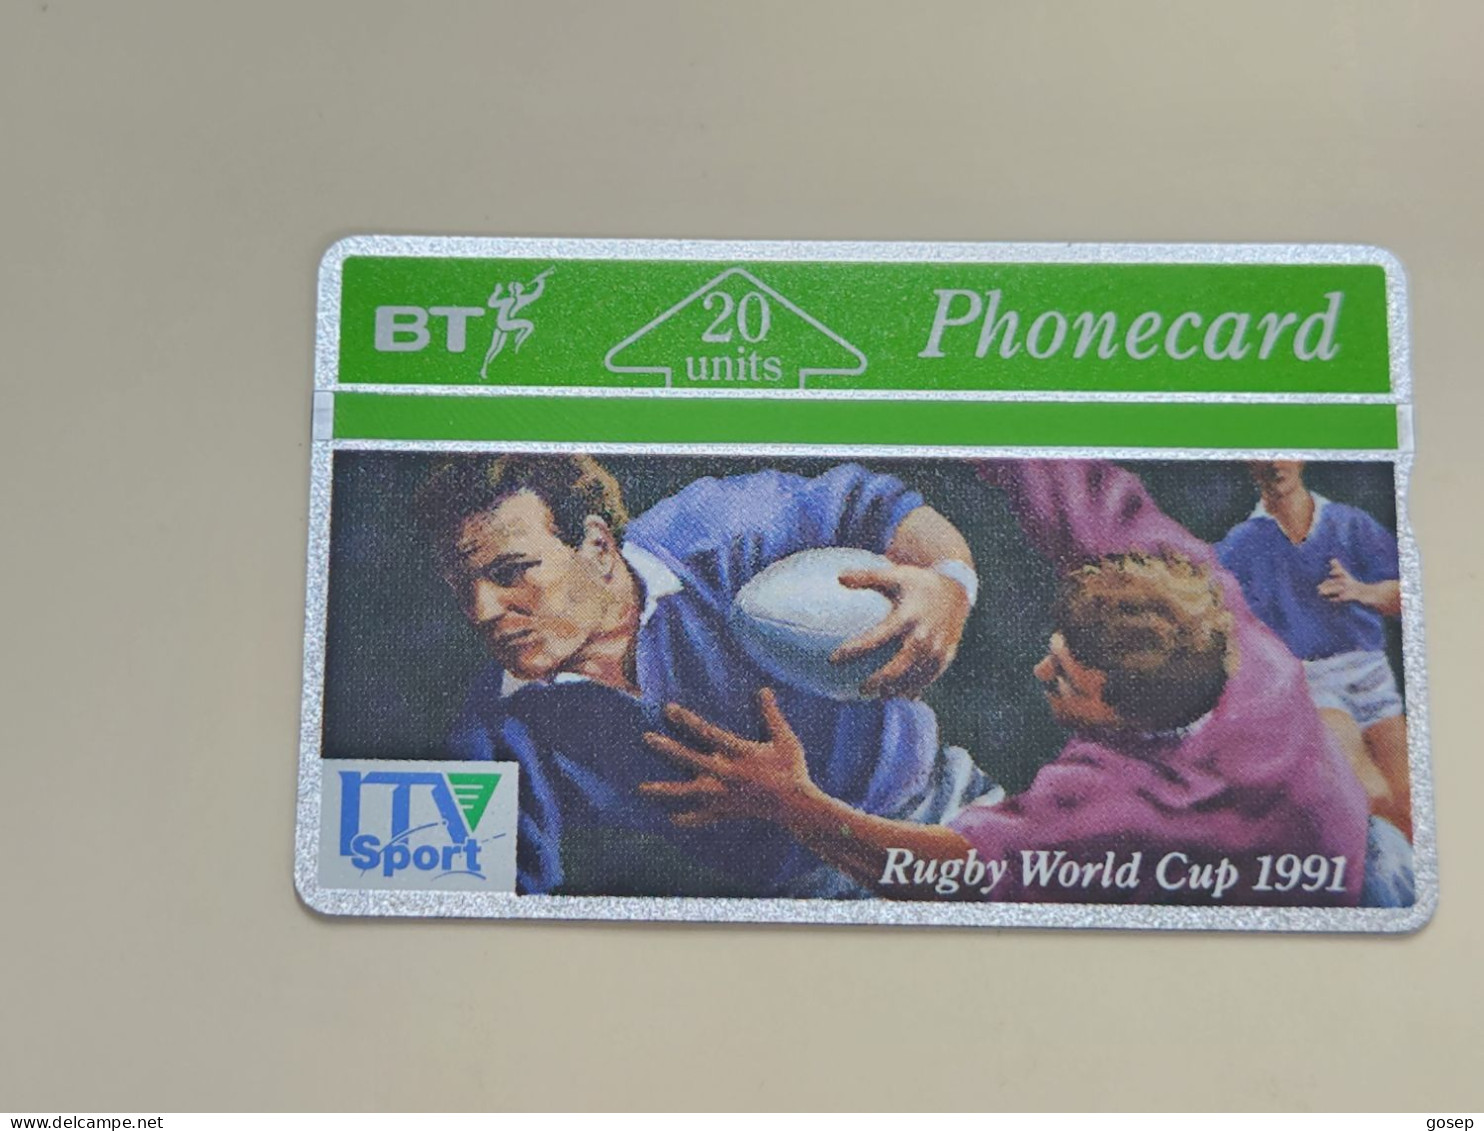 United Kingdom-(BTA021)-RUGBY WORLD CUP-(20units)-(48)-(148G17919)-price Cataloge6.00£-mint-card+1card Prepiad Free - BT Werbezwecke